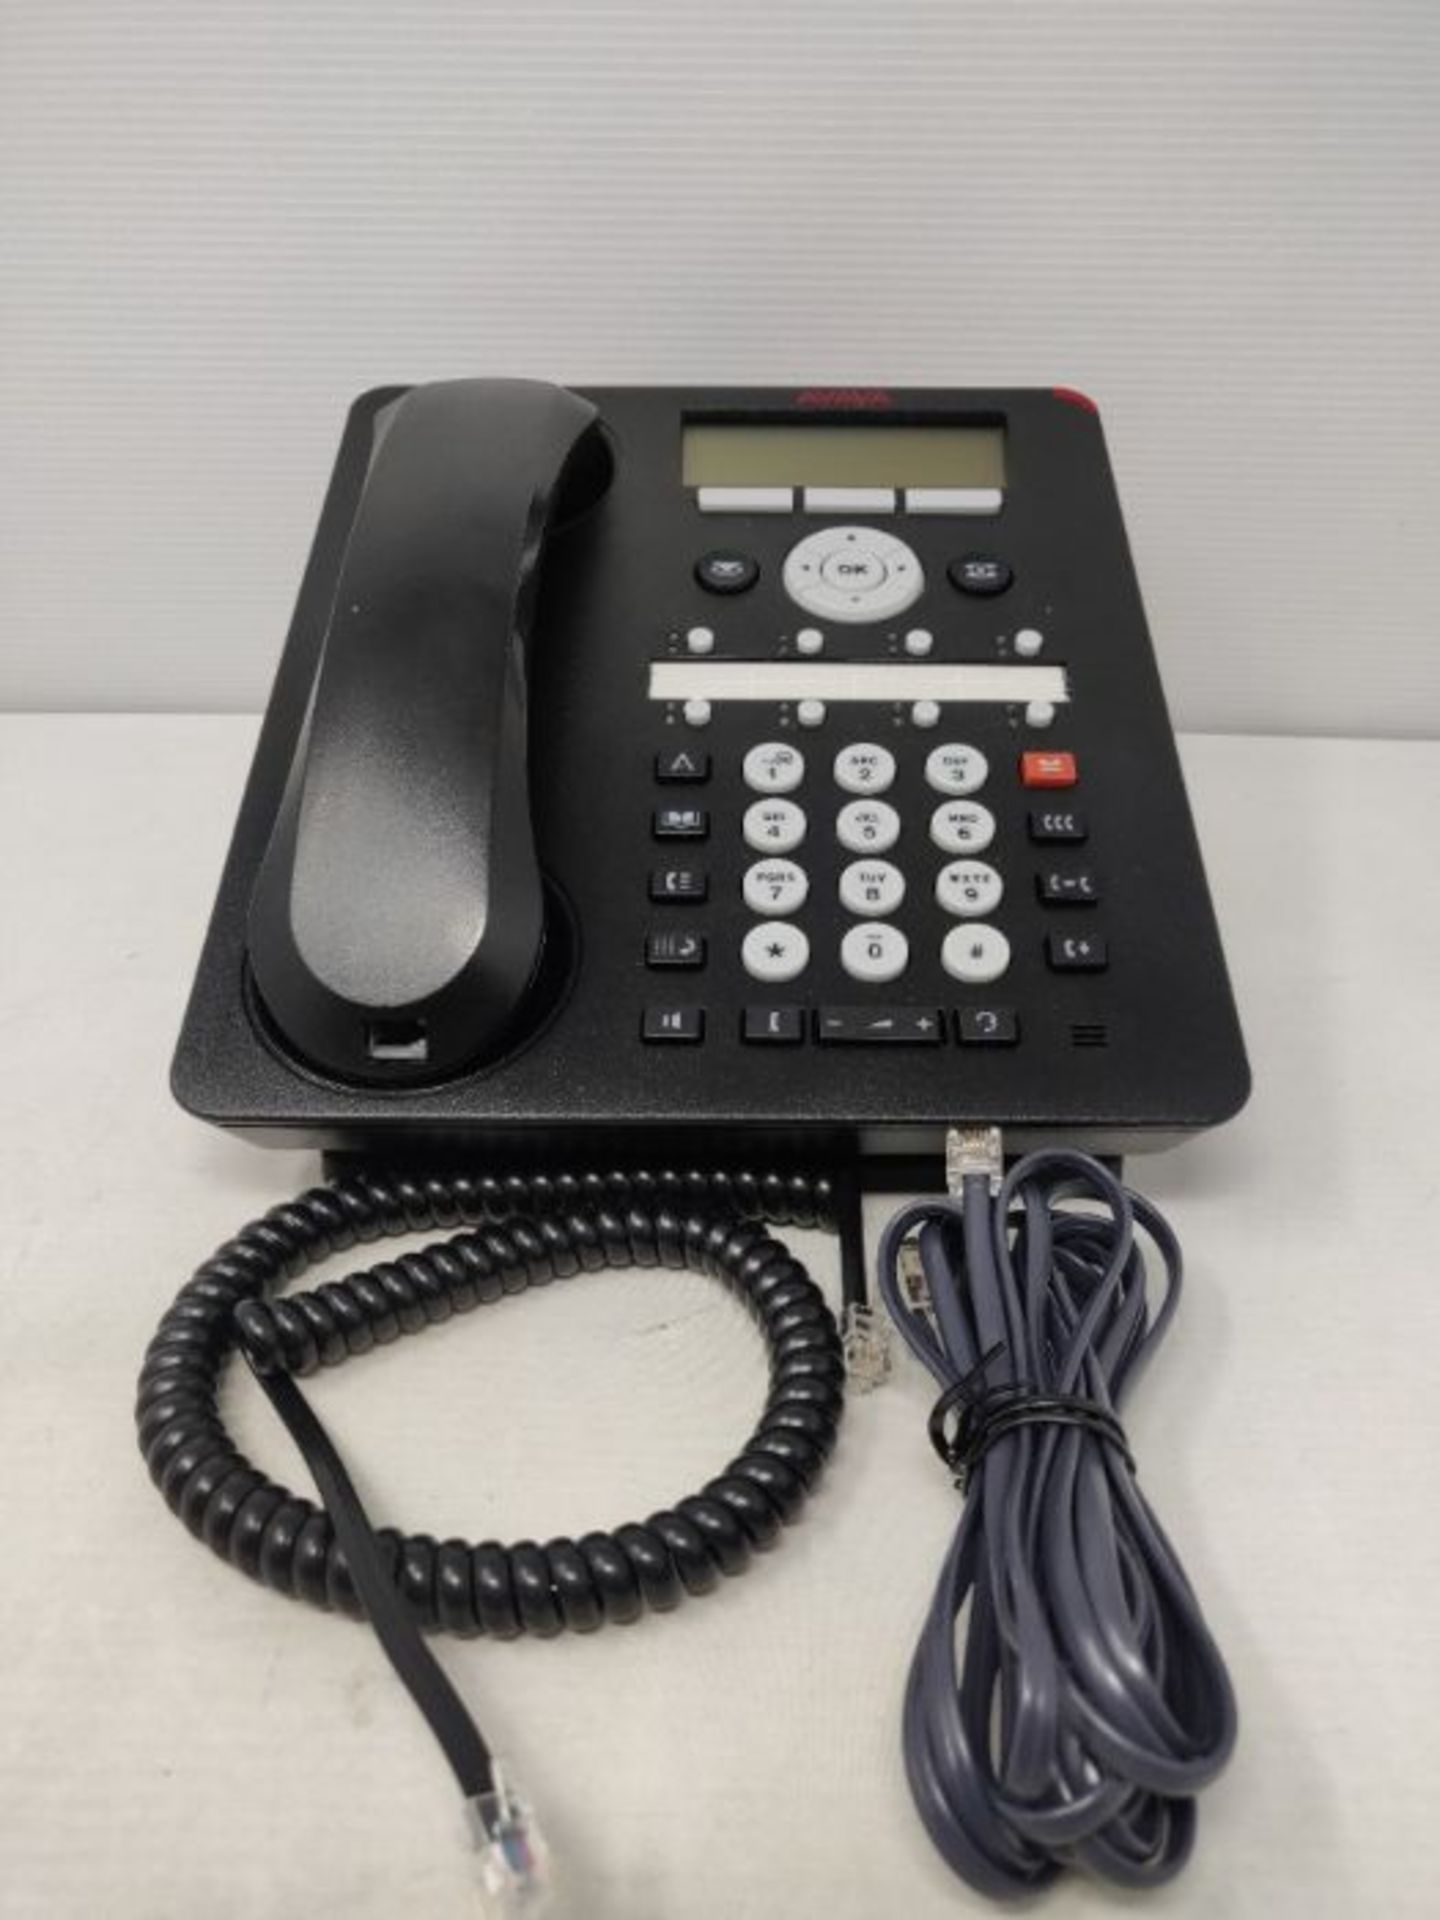 Avaya 1408 Digital Deskphone - Digital phone - black (Renewed) - Image 2 of 2